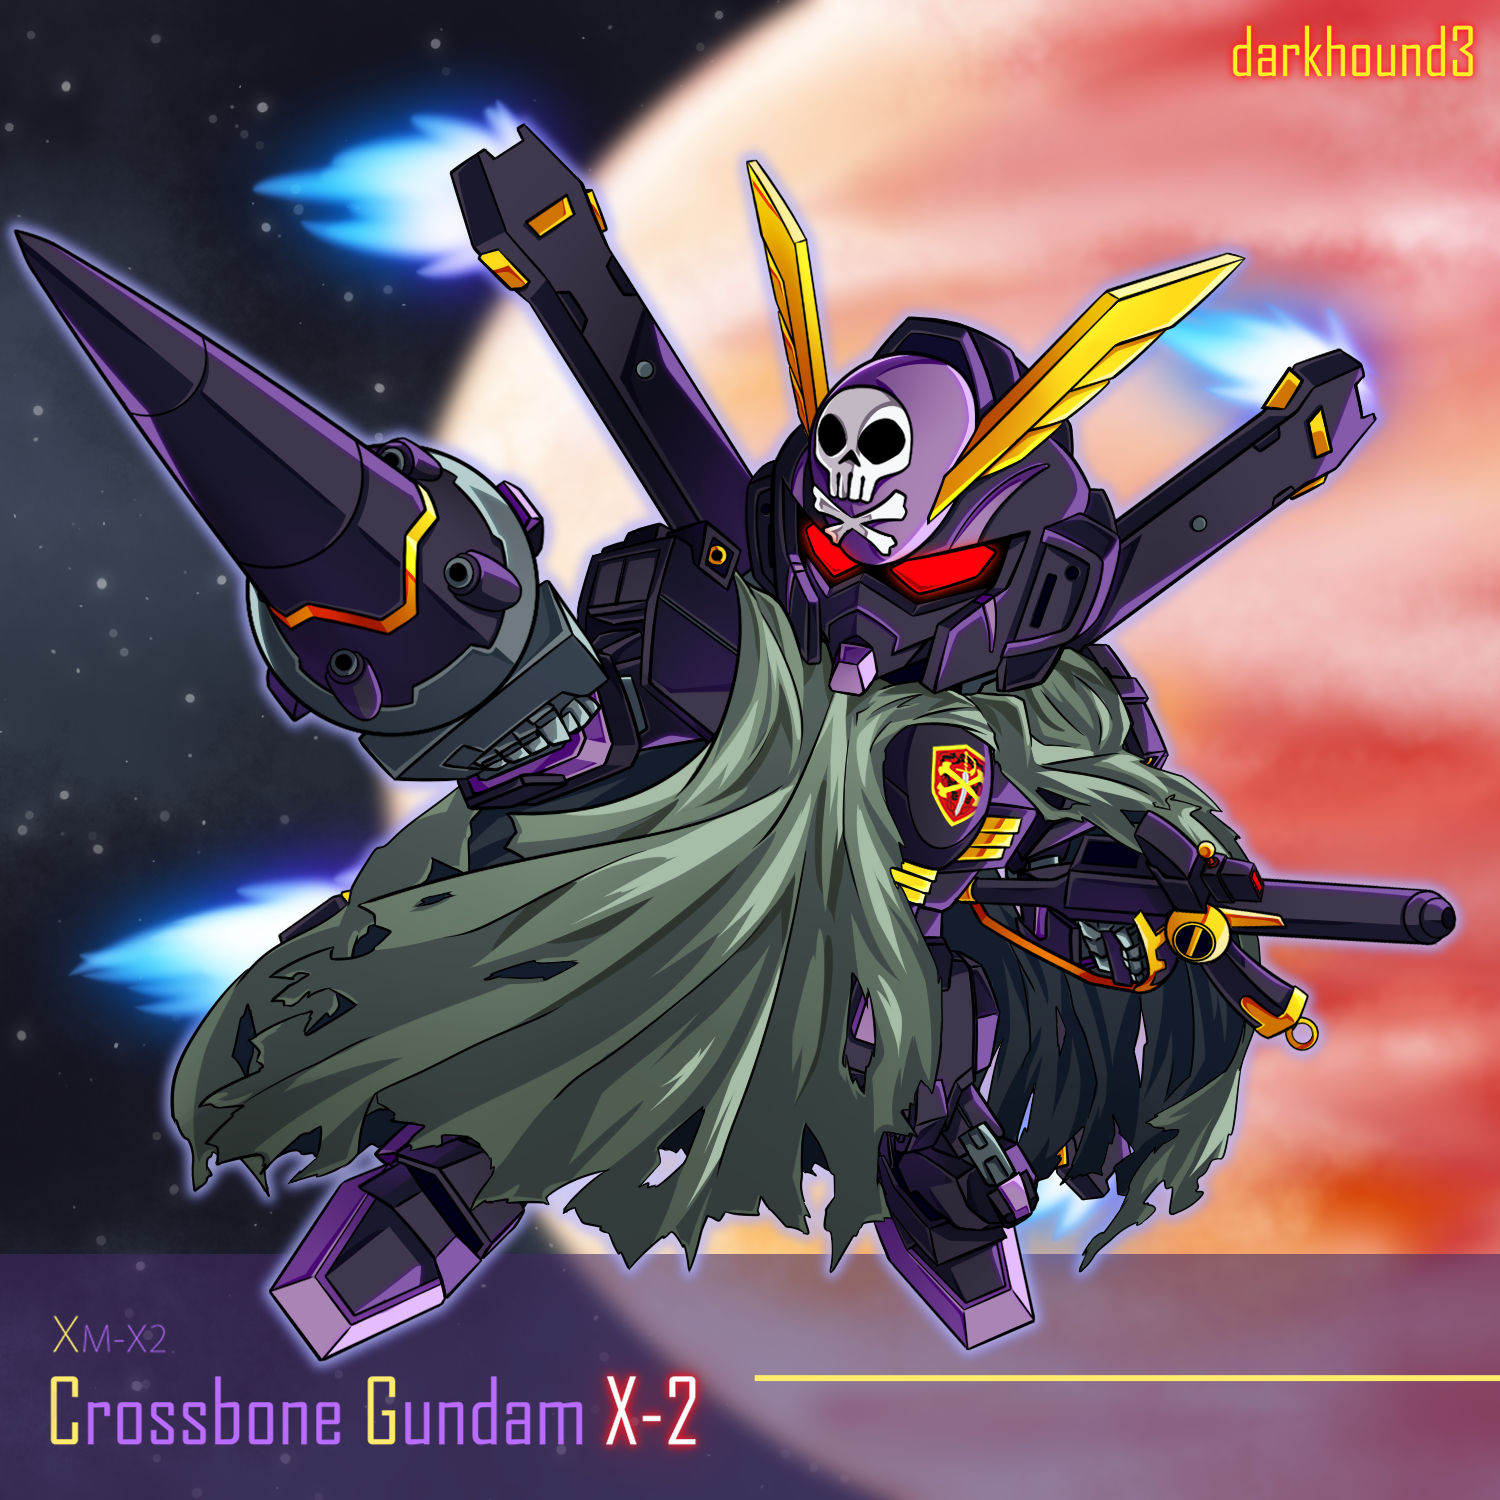 Anime 1500x1500 Crossbone Gundam X-2 Mobile Suit Crossbone Gundam Super Robot Taisen anime mechs Gundam artwork digital art fan art